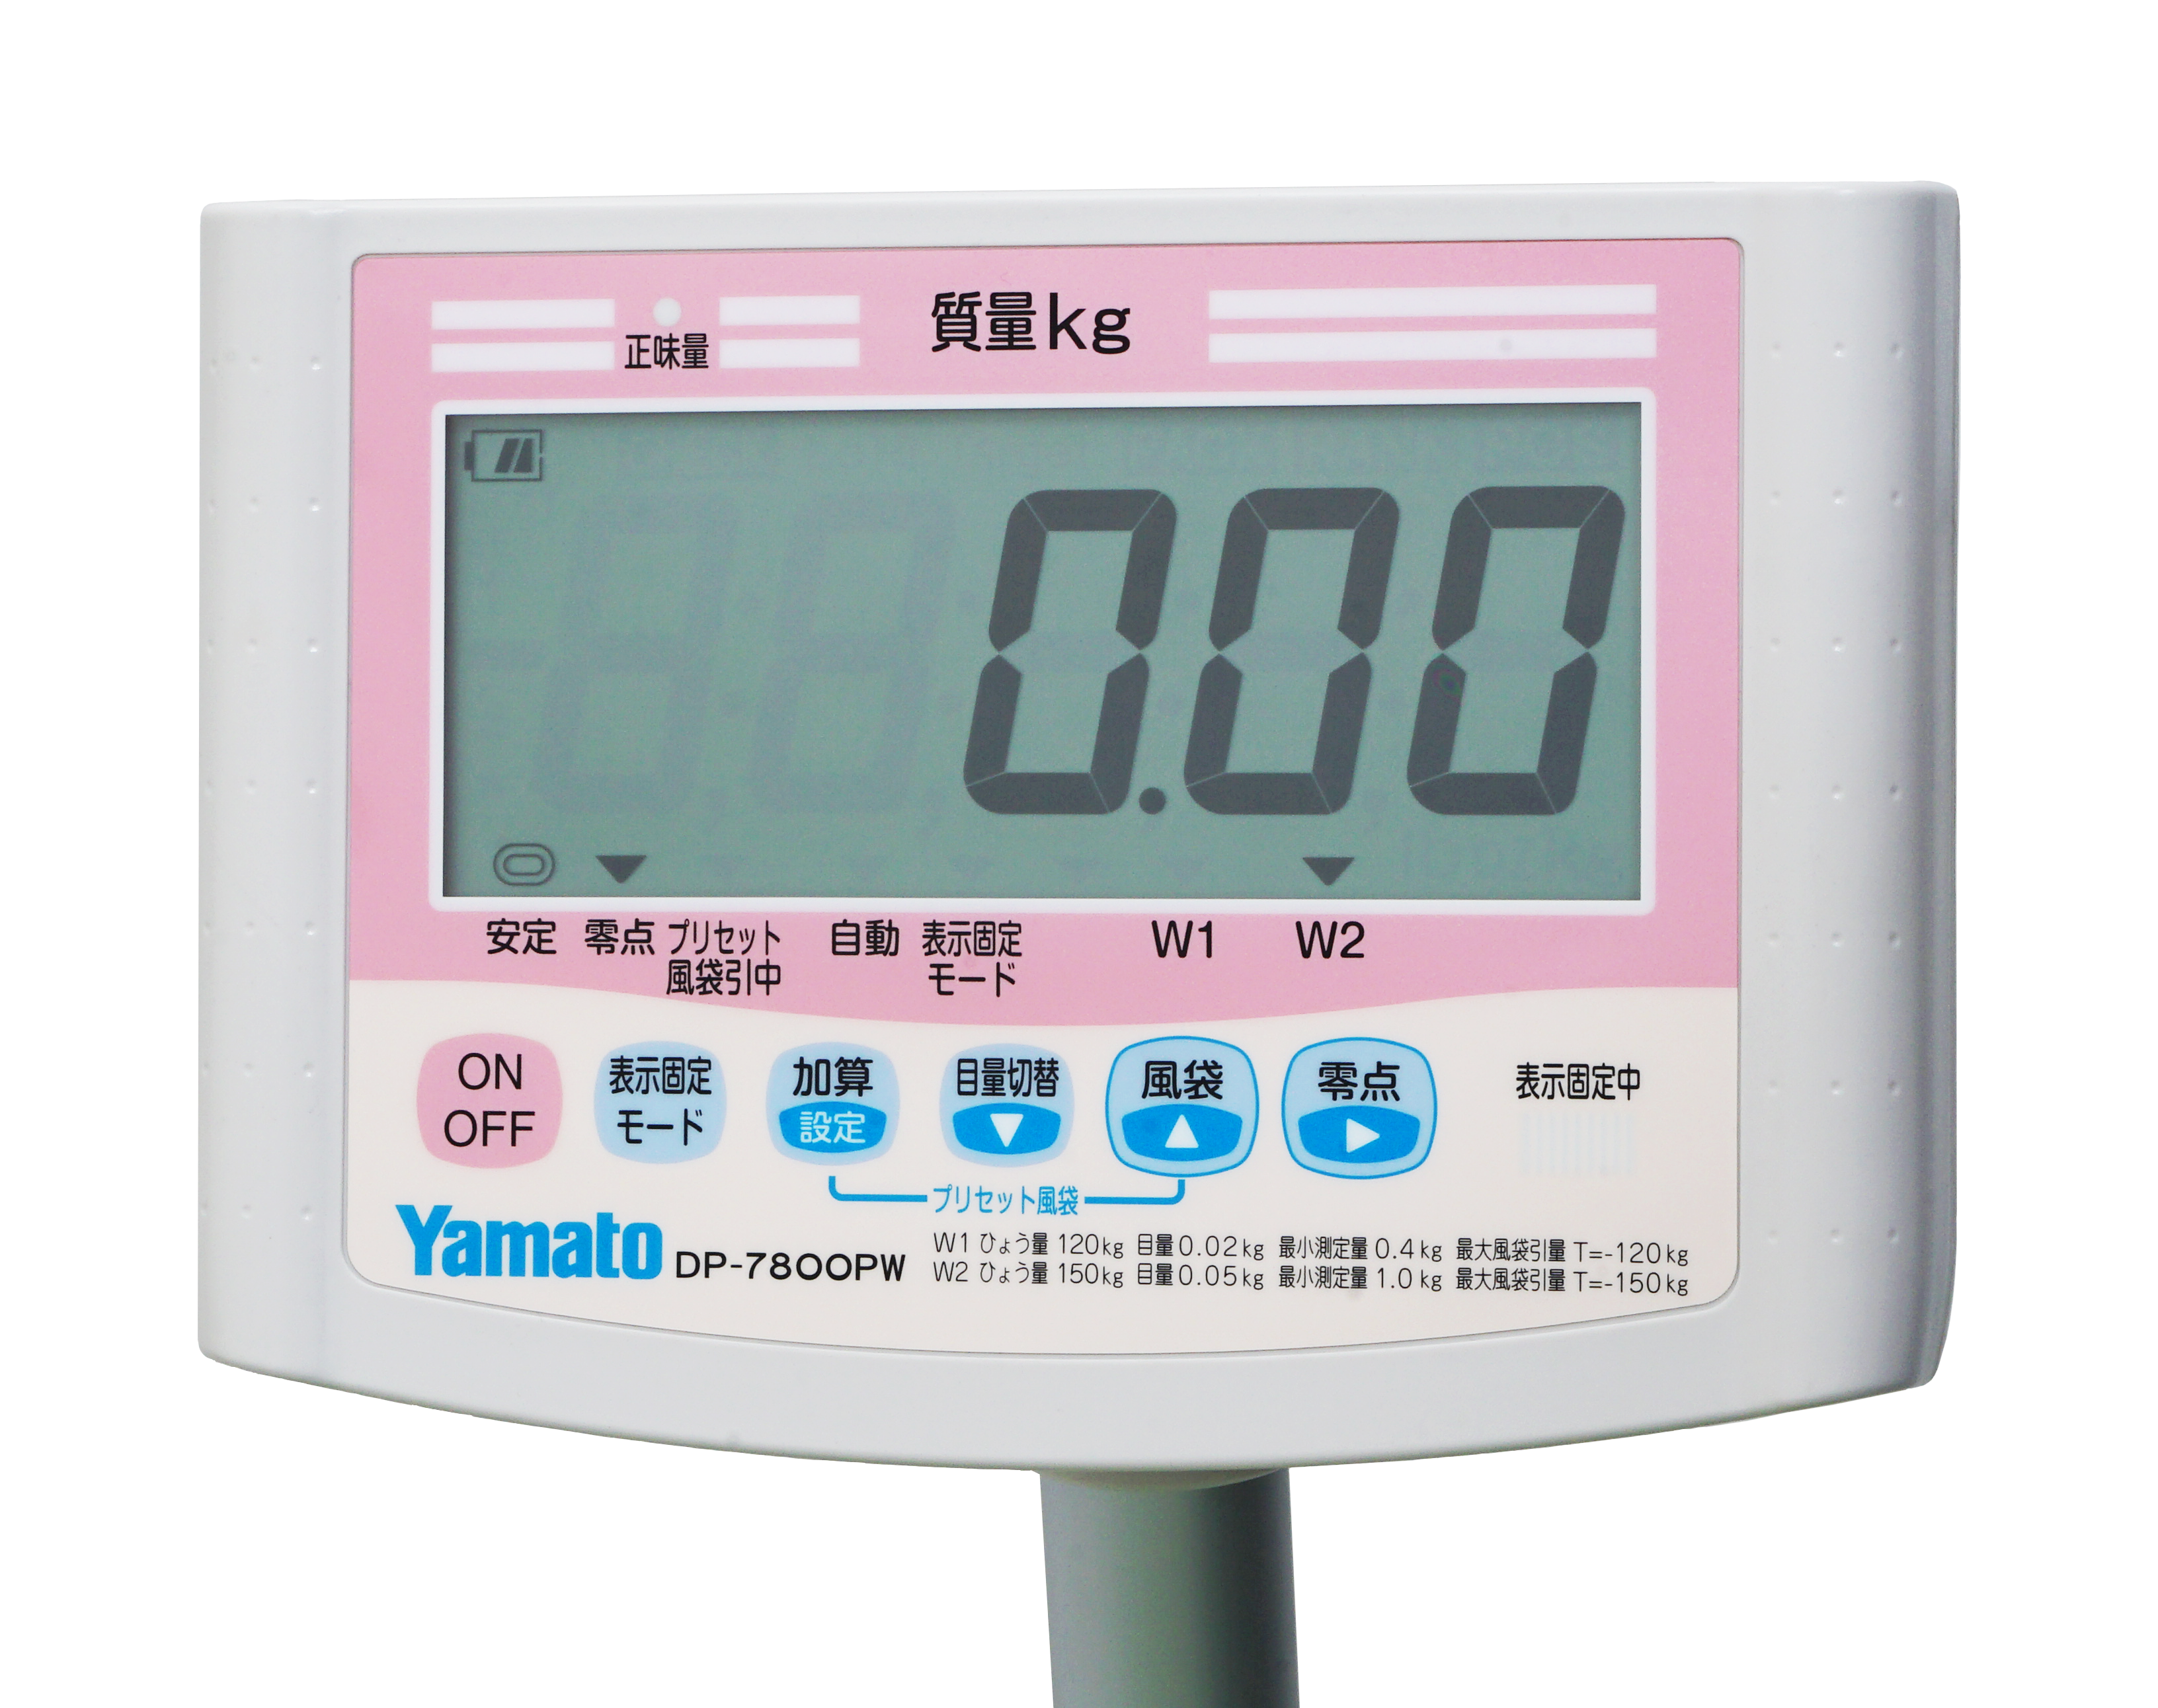 日本最級 ファースト店アズワン AS ONE デジタル体重計 検定付 一体型 DP-7800PW-200